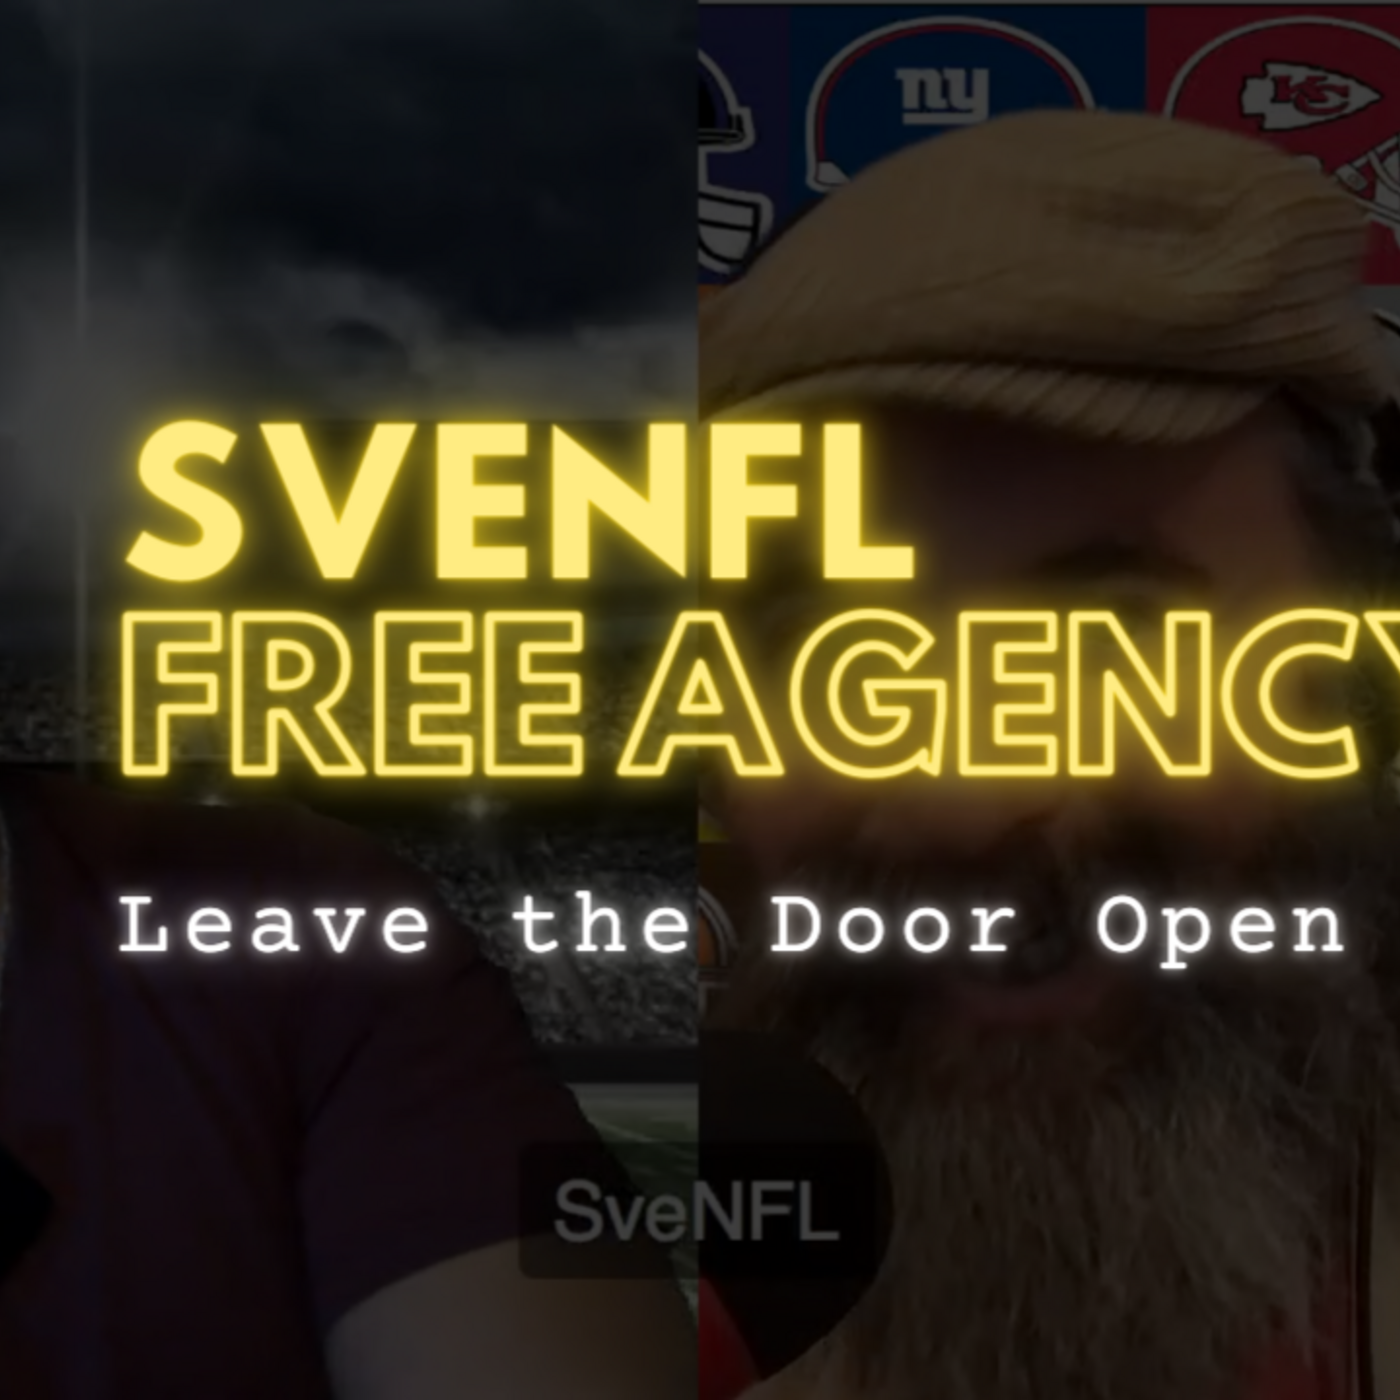 Free Agency: Leave the Door Open